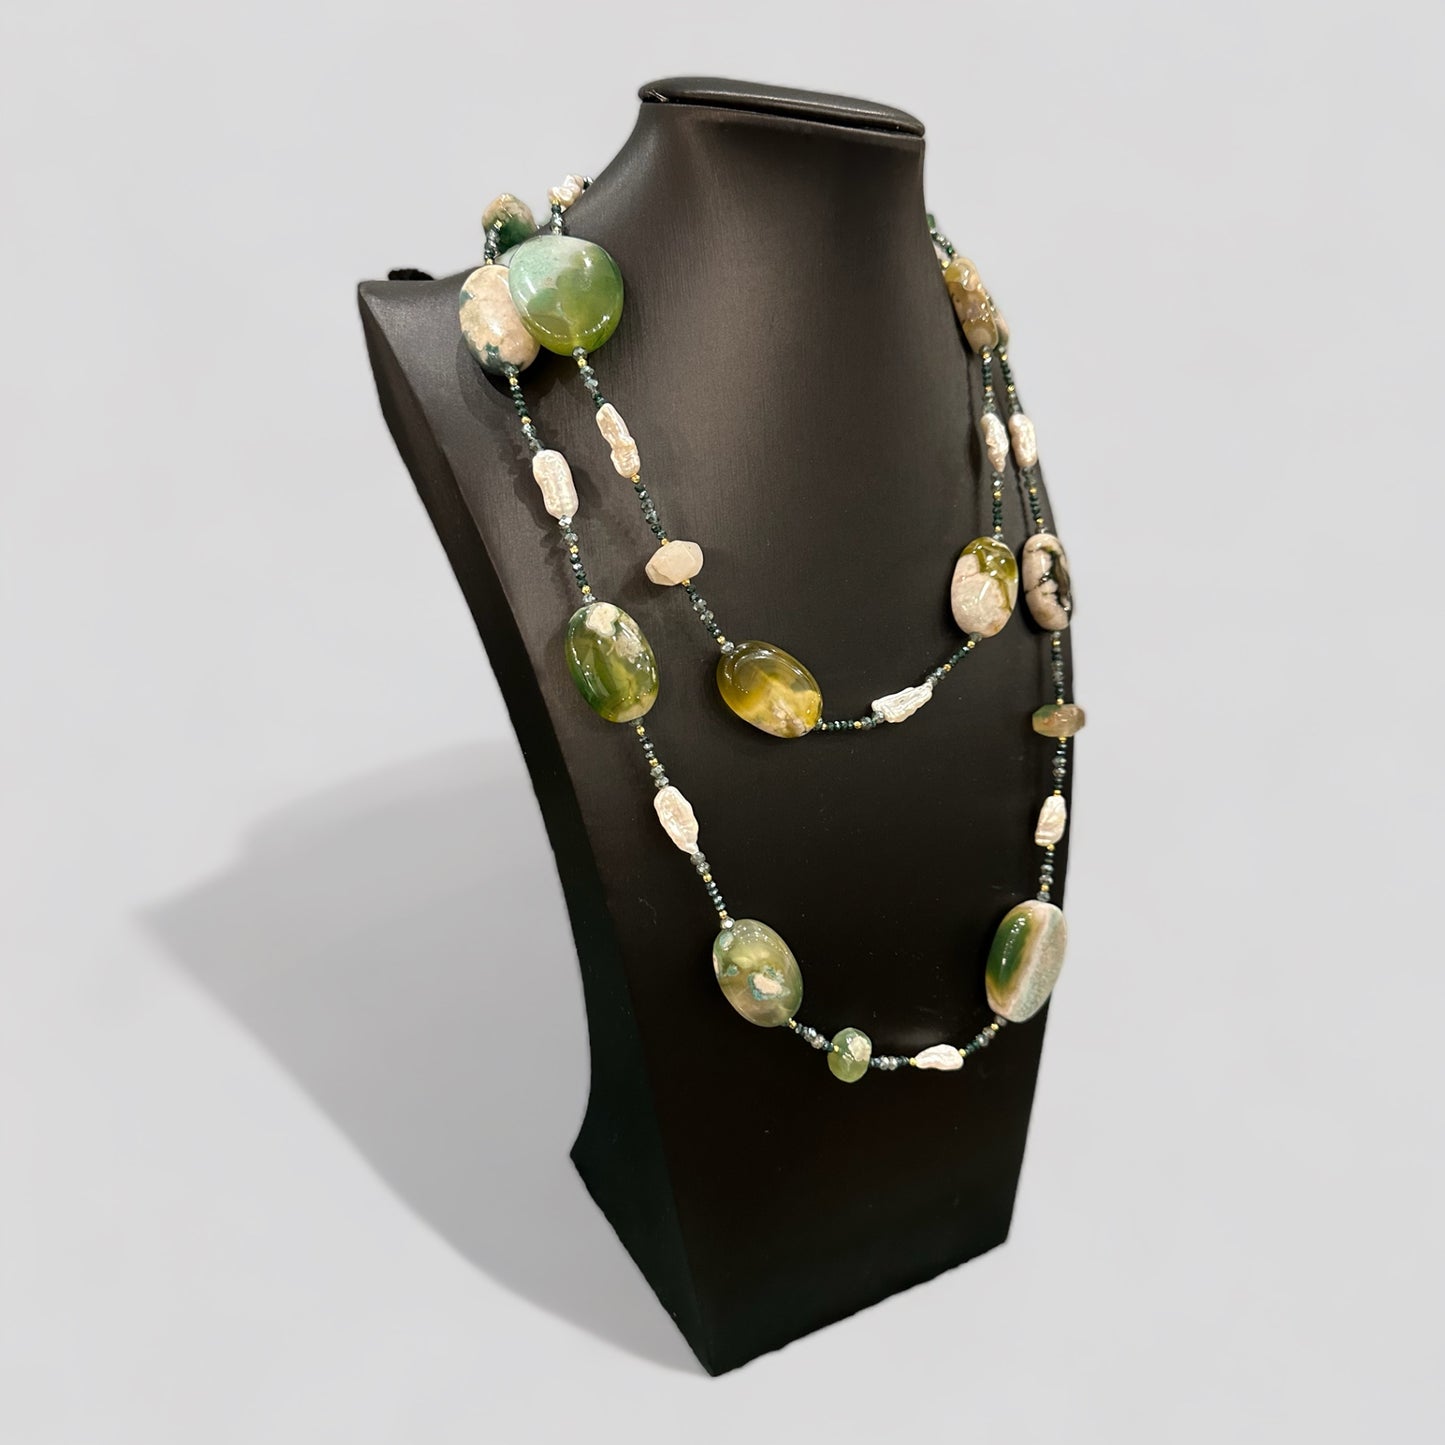 Collana lunga in Agata verde, perle irregolari d’acqua dolce